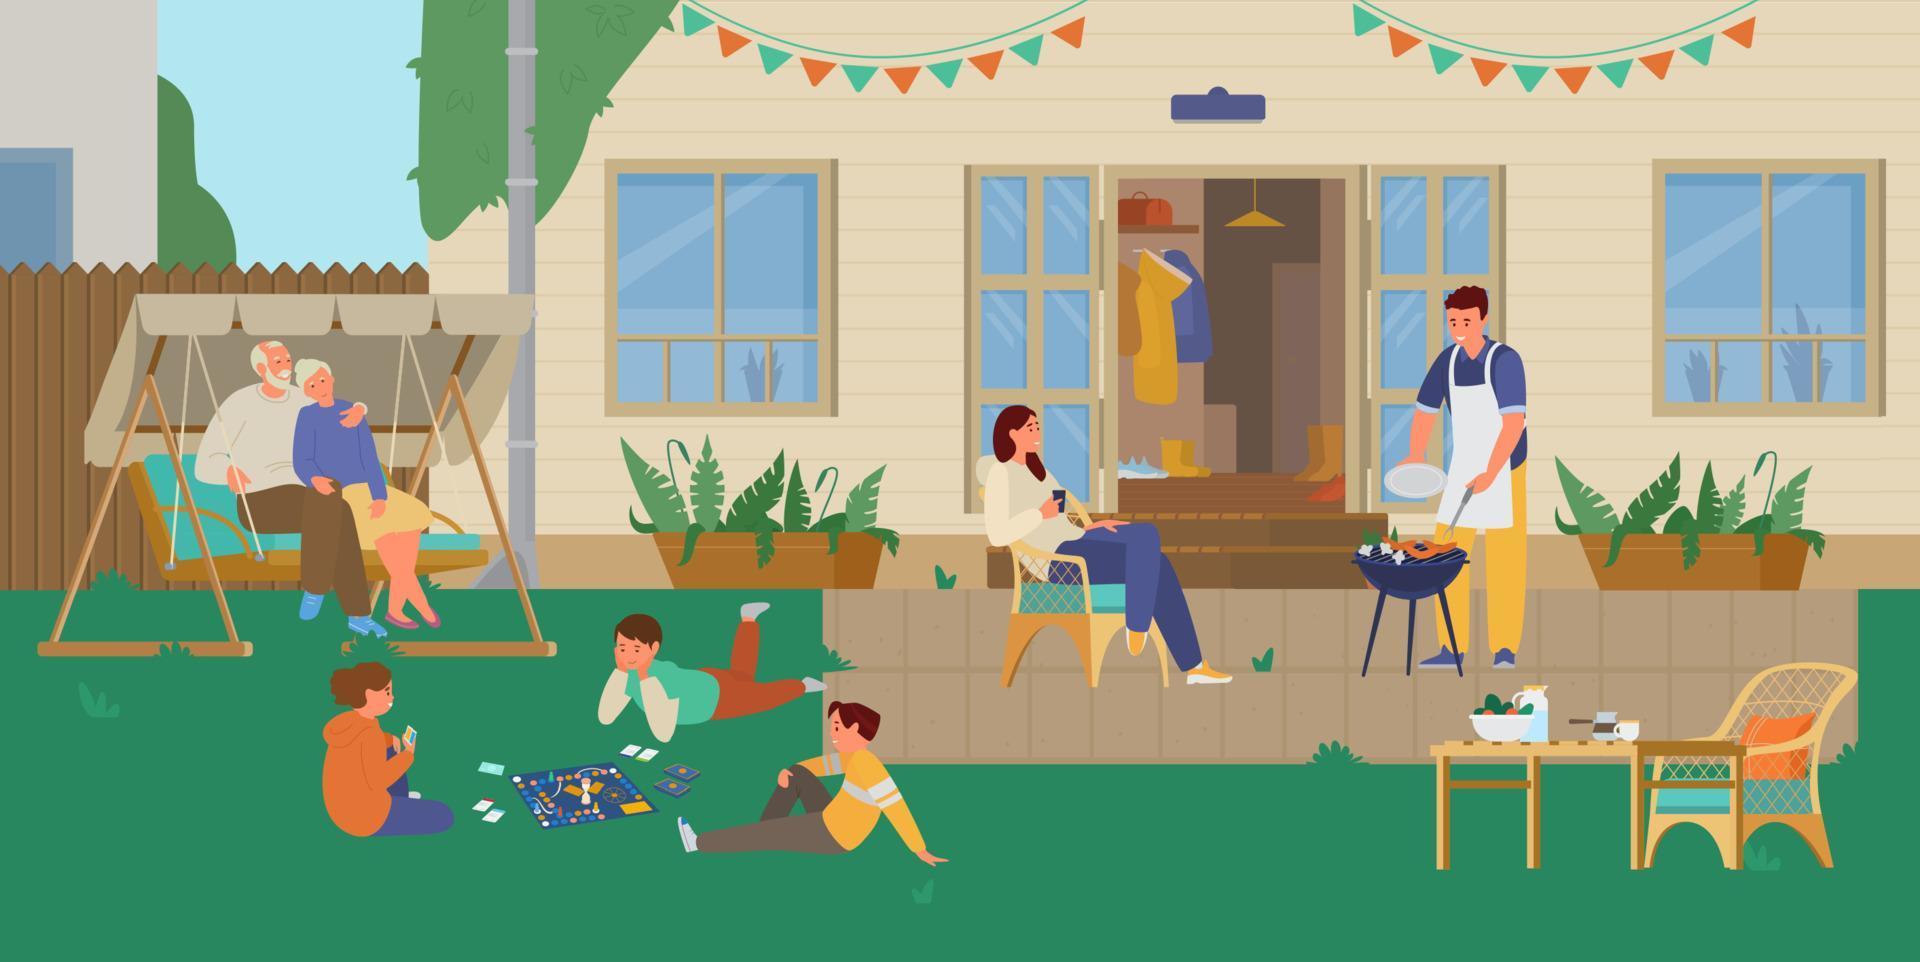 famille ayant une soirée grillades dans l'arrière-cour. les enfants jouent à un jeu de société, les parents cuisinent, les grands-parents se reposent dans une balançoire de jardin. fond de terrasse. illustration vectorielle plane. vecteur